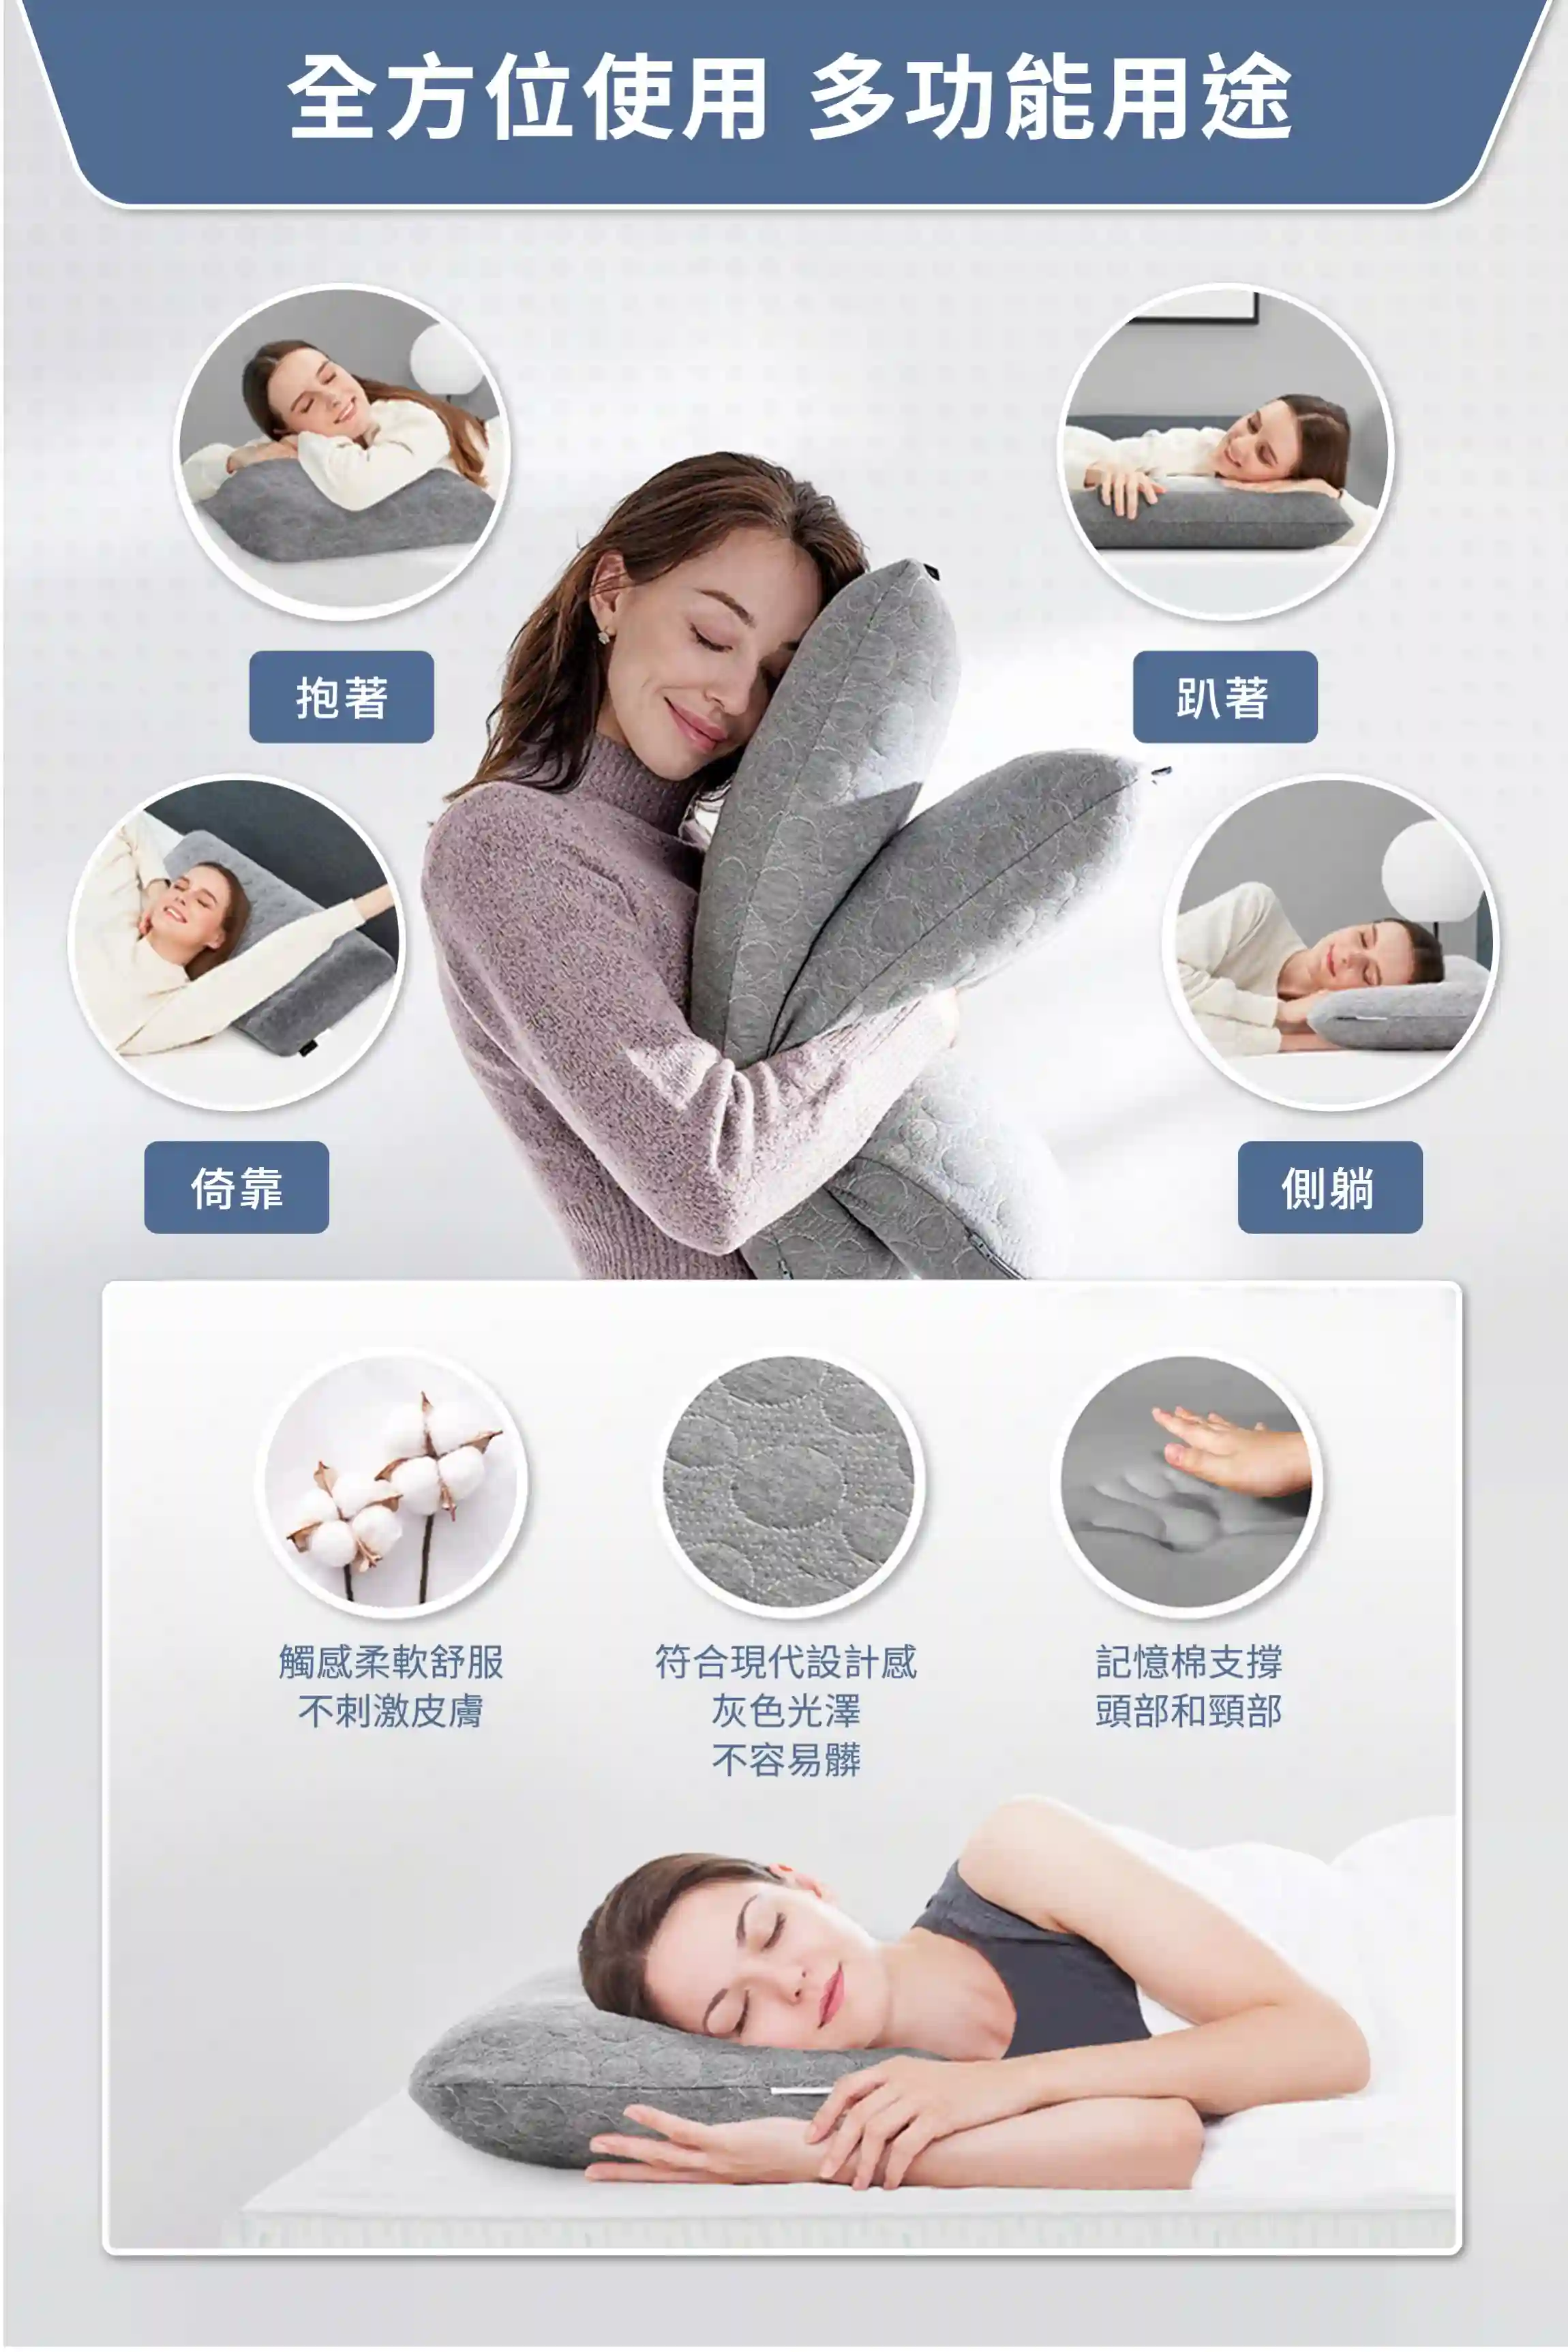 Nebula經典記憶枕適用於仰睡、趴睡、側睡、倚靠